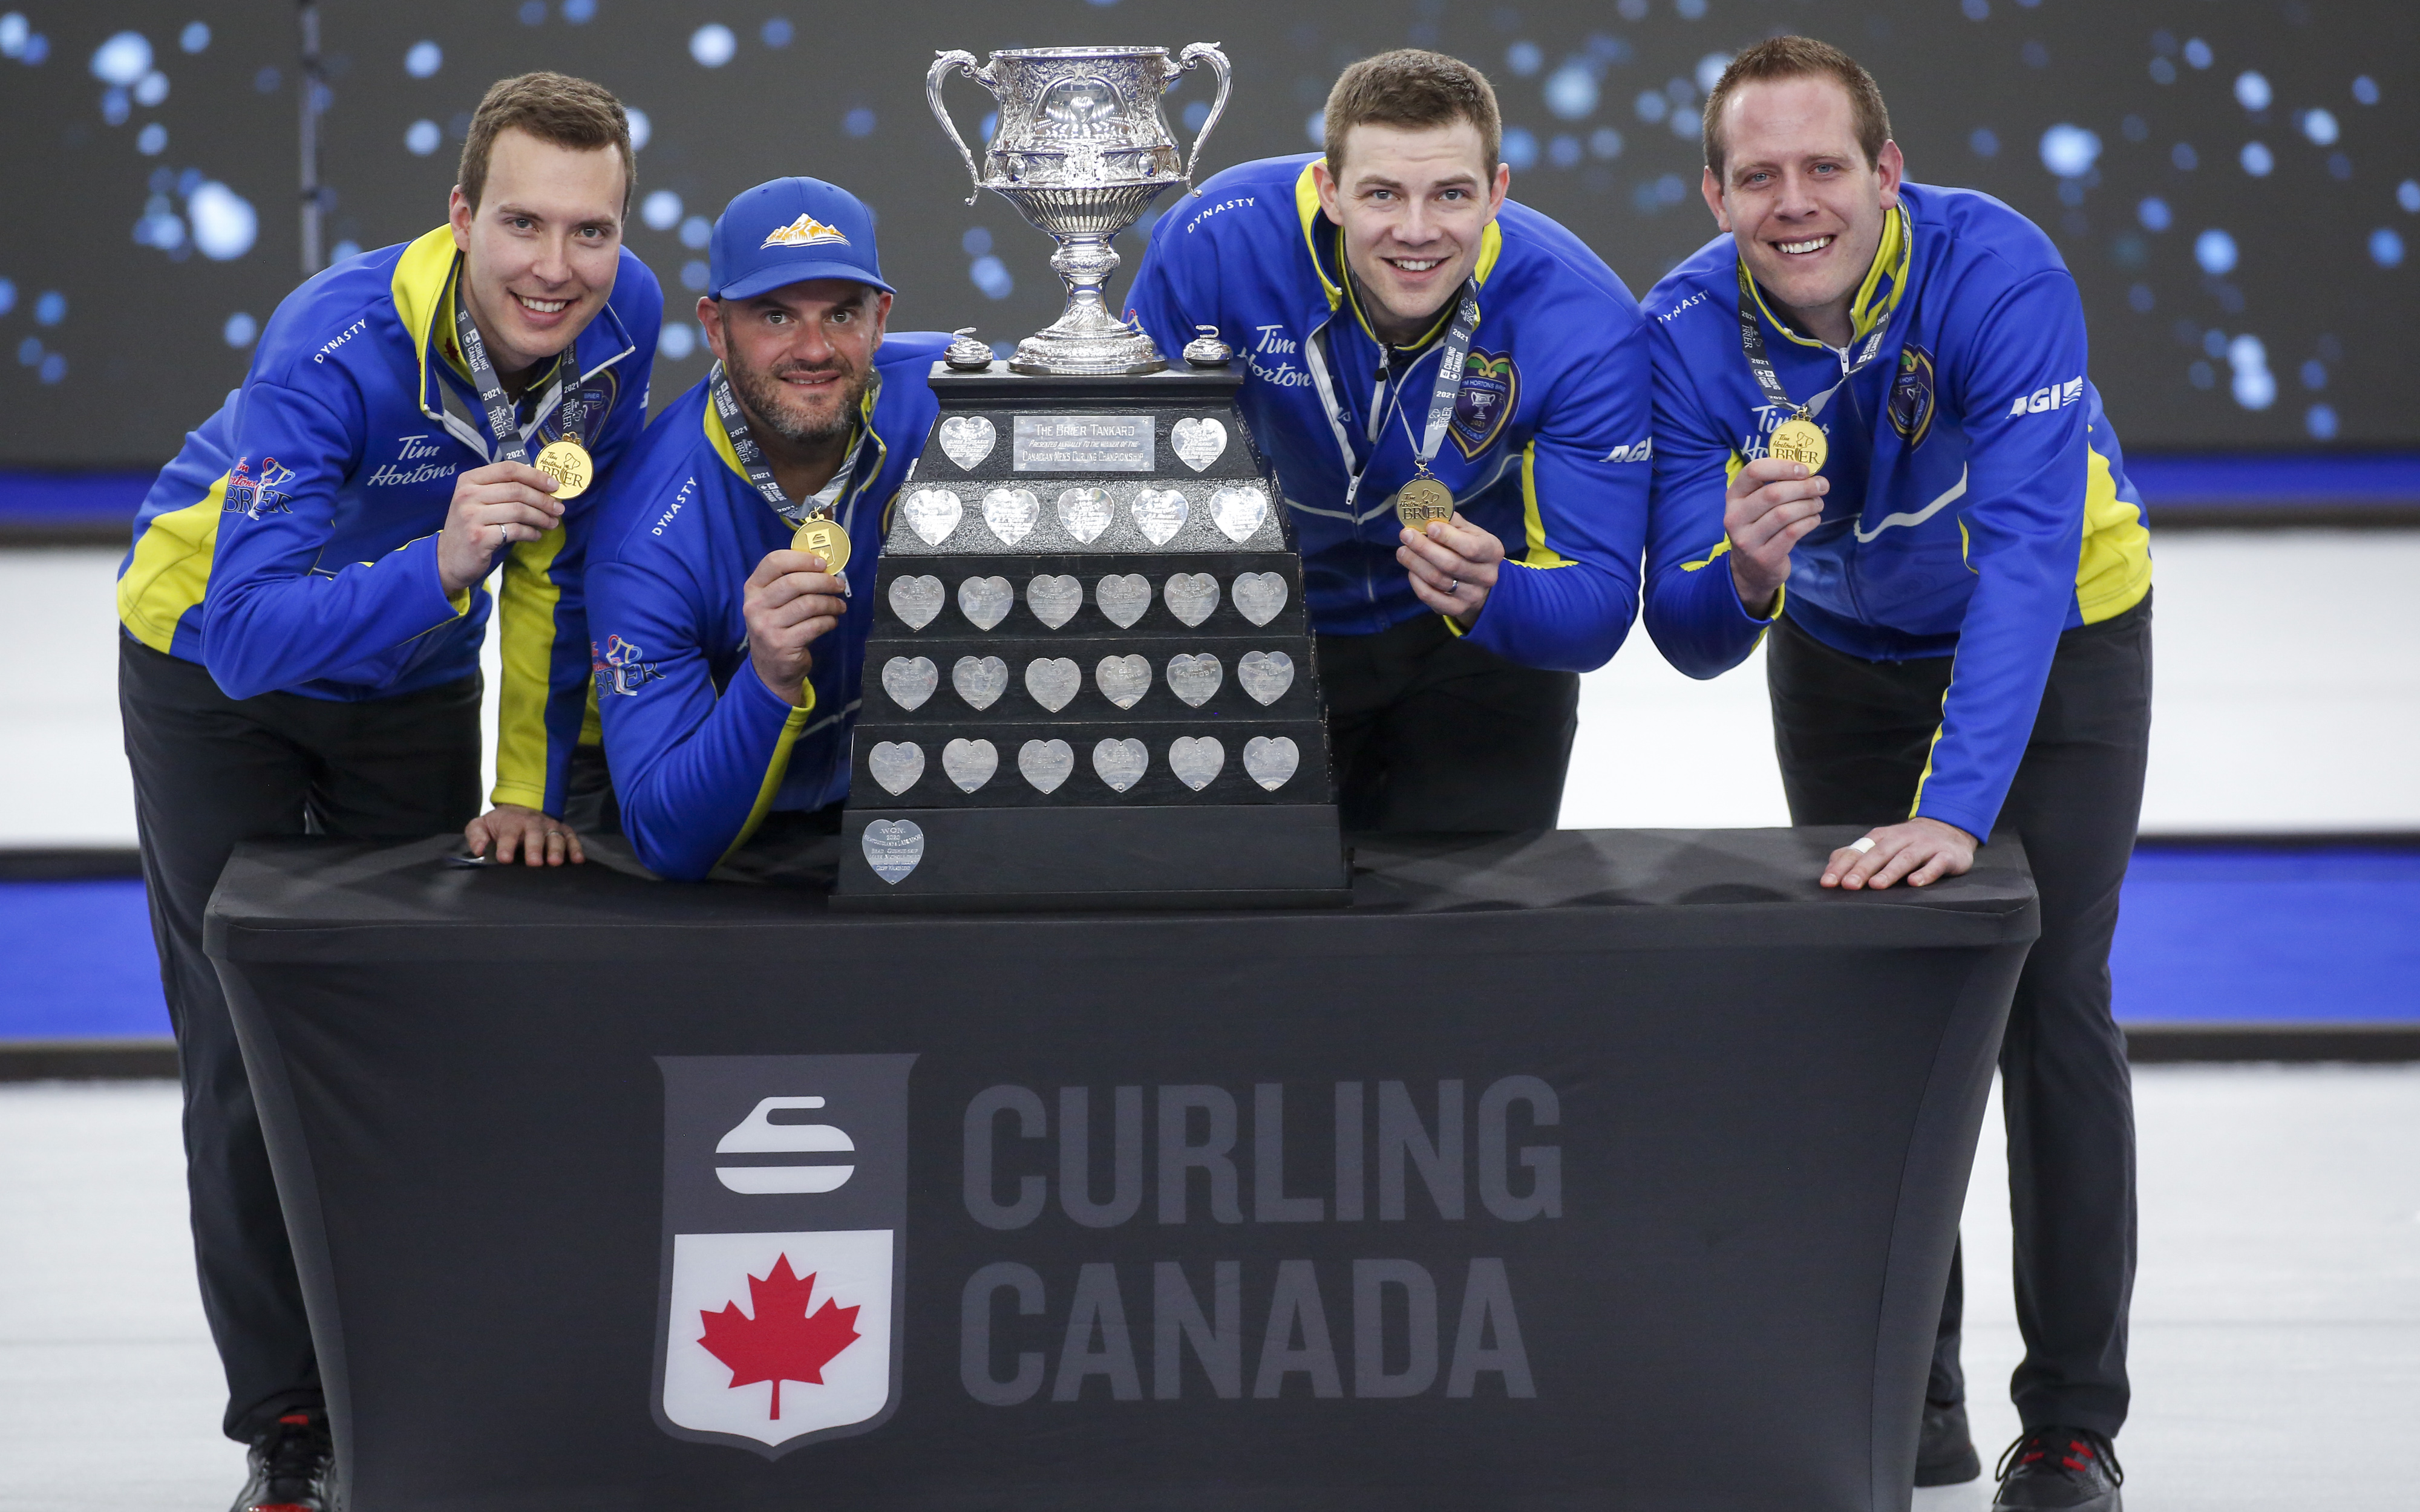 Squadra Alberta, da sinistra a destra, saltare Brendan Bottcher, terzo Darren Moulding, secondo Brad Thiessen, piombo Karrick Martin celebrare sconfiggendo Squadra Wild Card due per vincere la finale di curling Brier a Calgary, Alta., Domenica 14 marzo 2021.